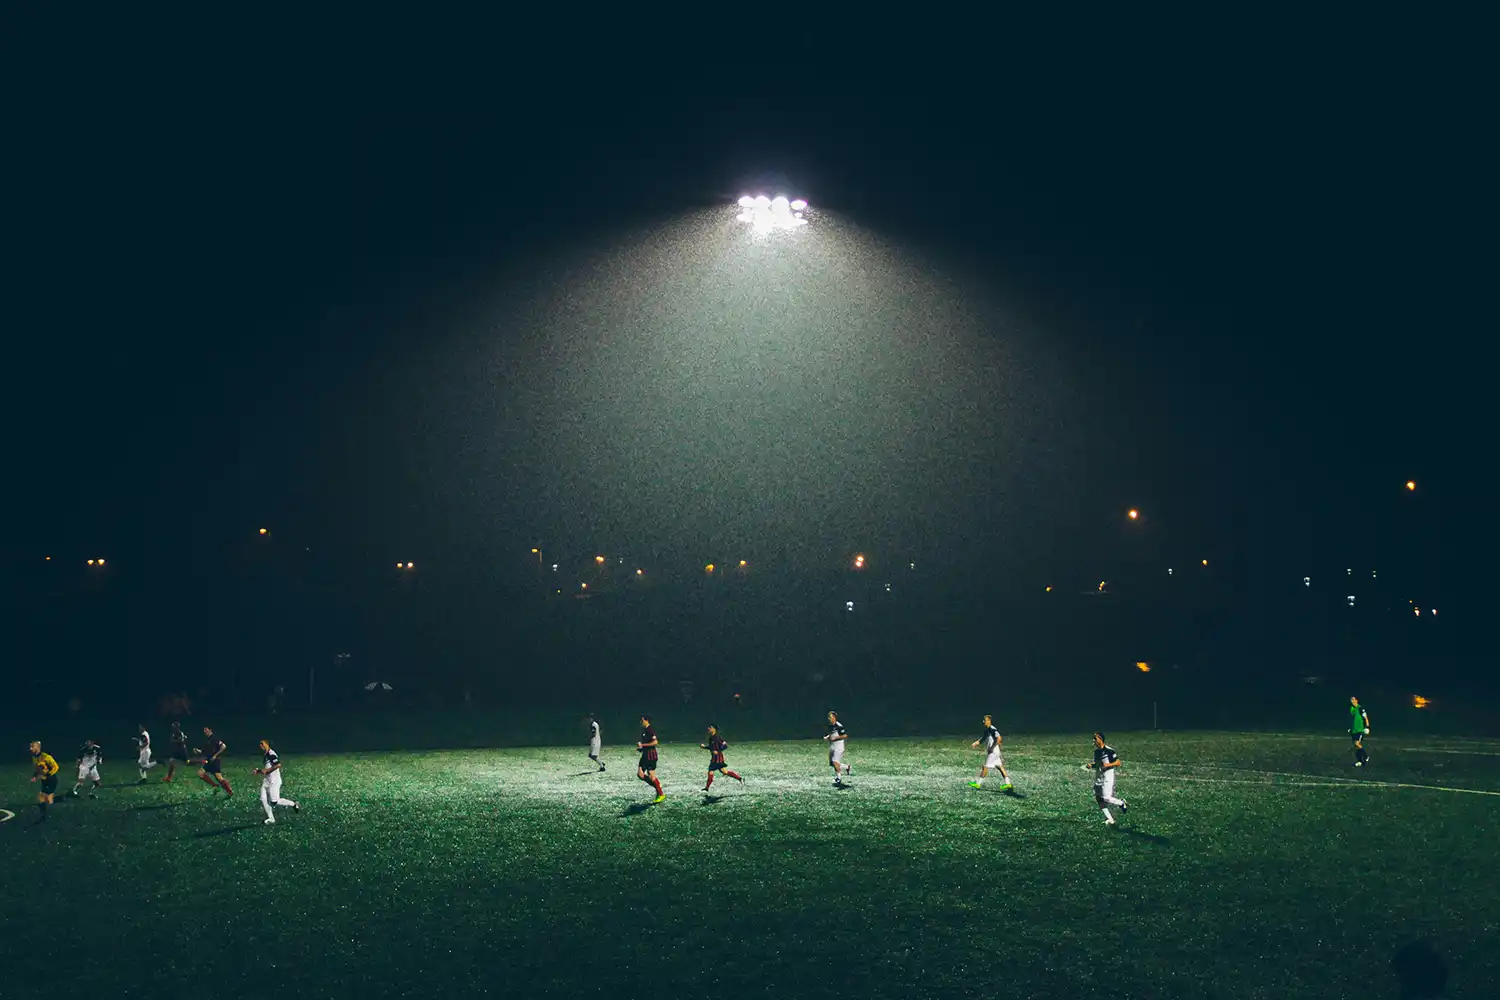 a football game at night